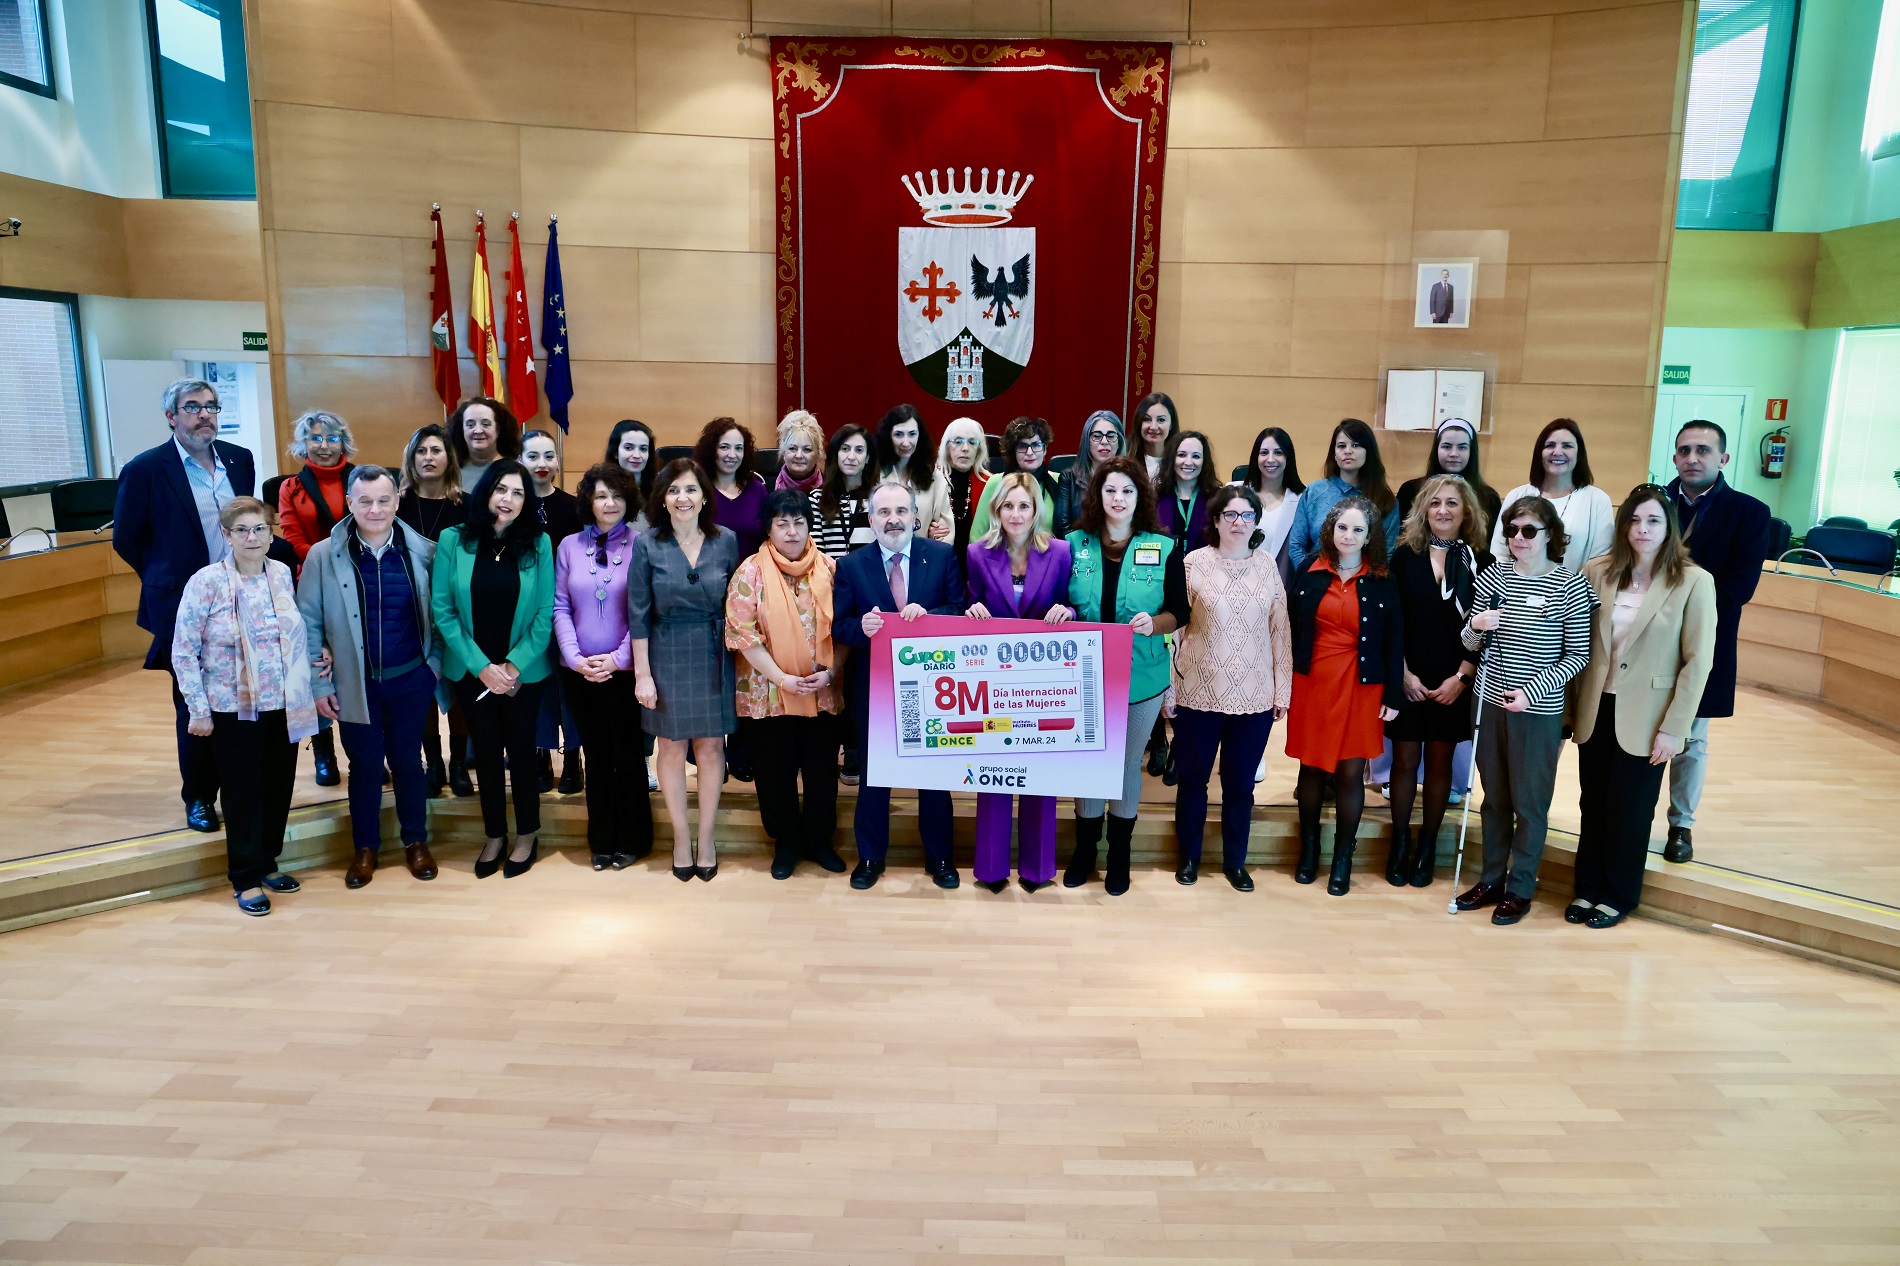 ONCE presenta en Alcobendas su cupón del ‘Día Internacional de la Mujer’